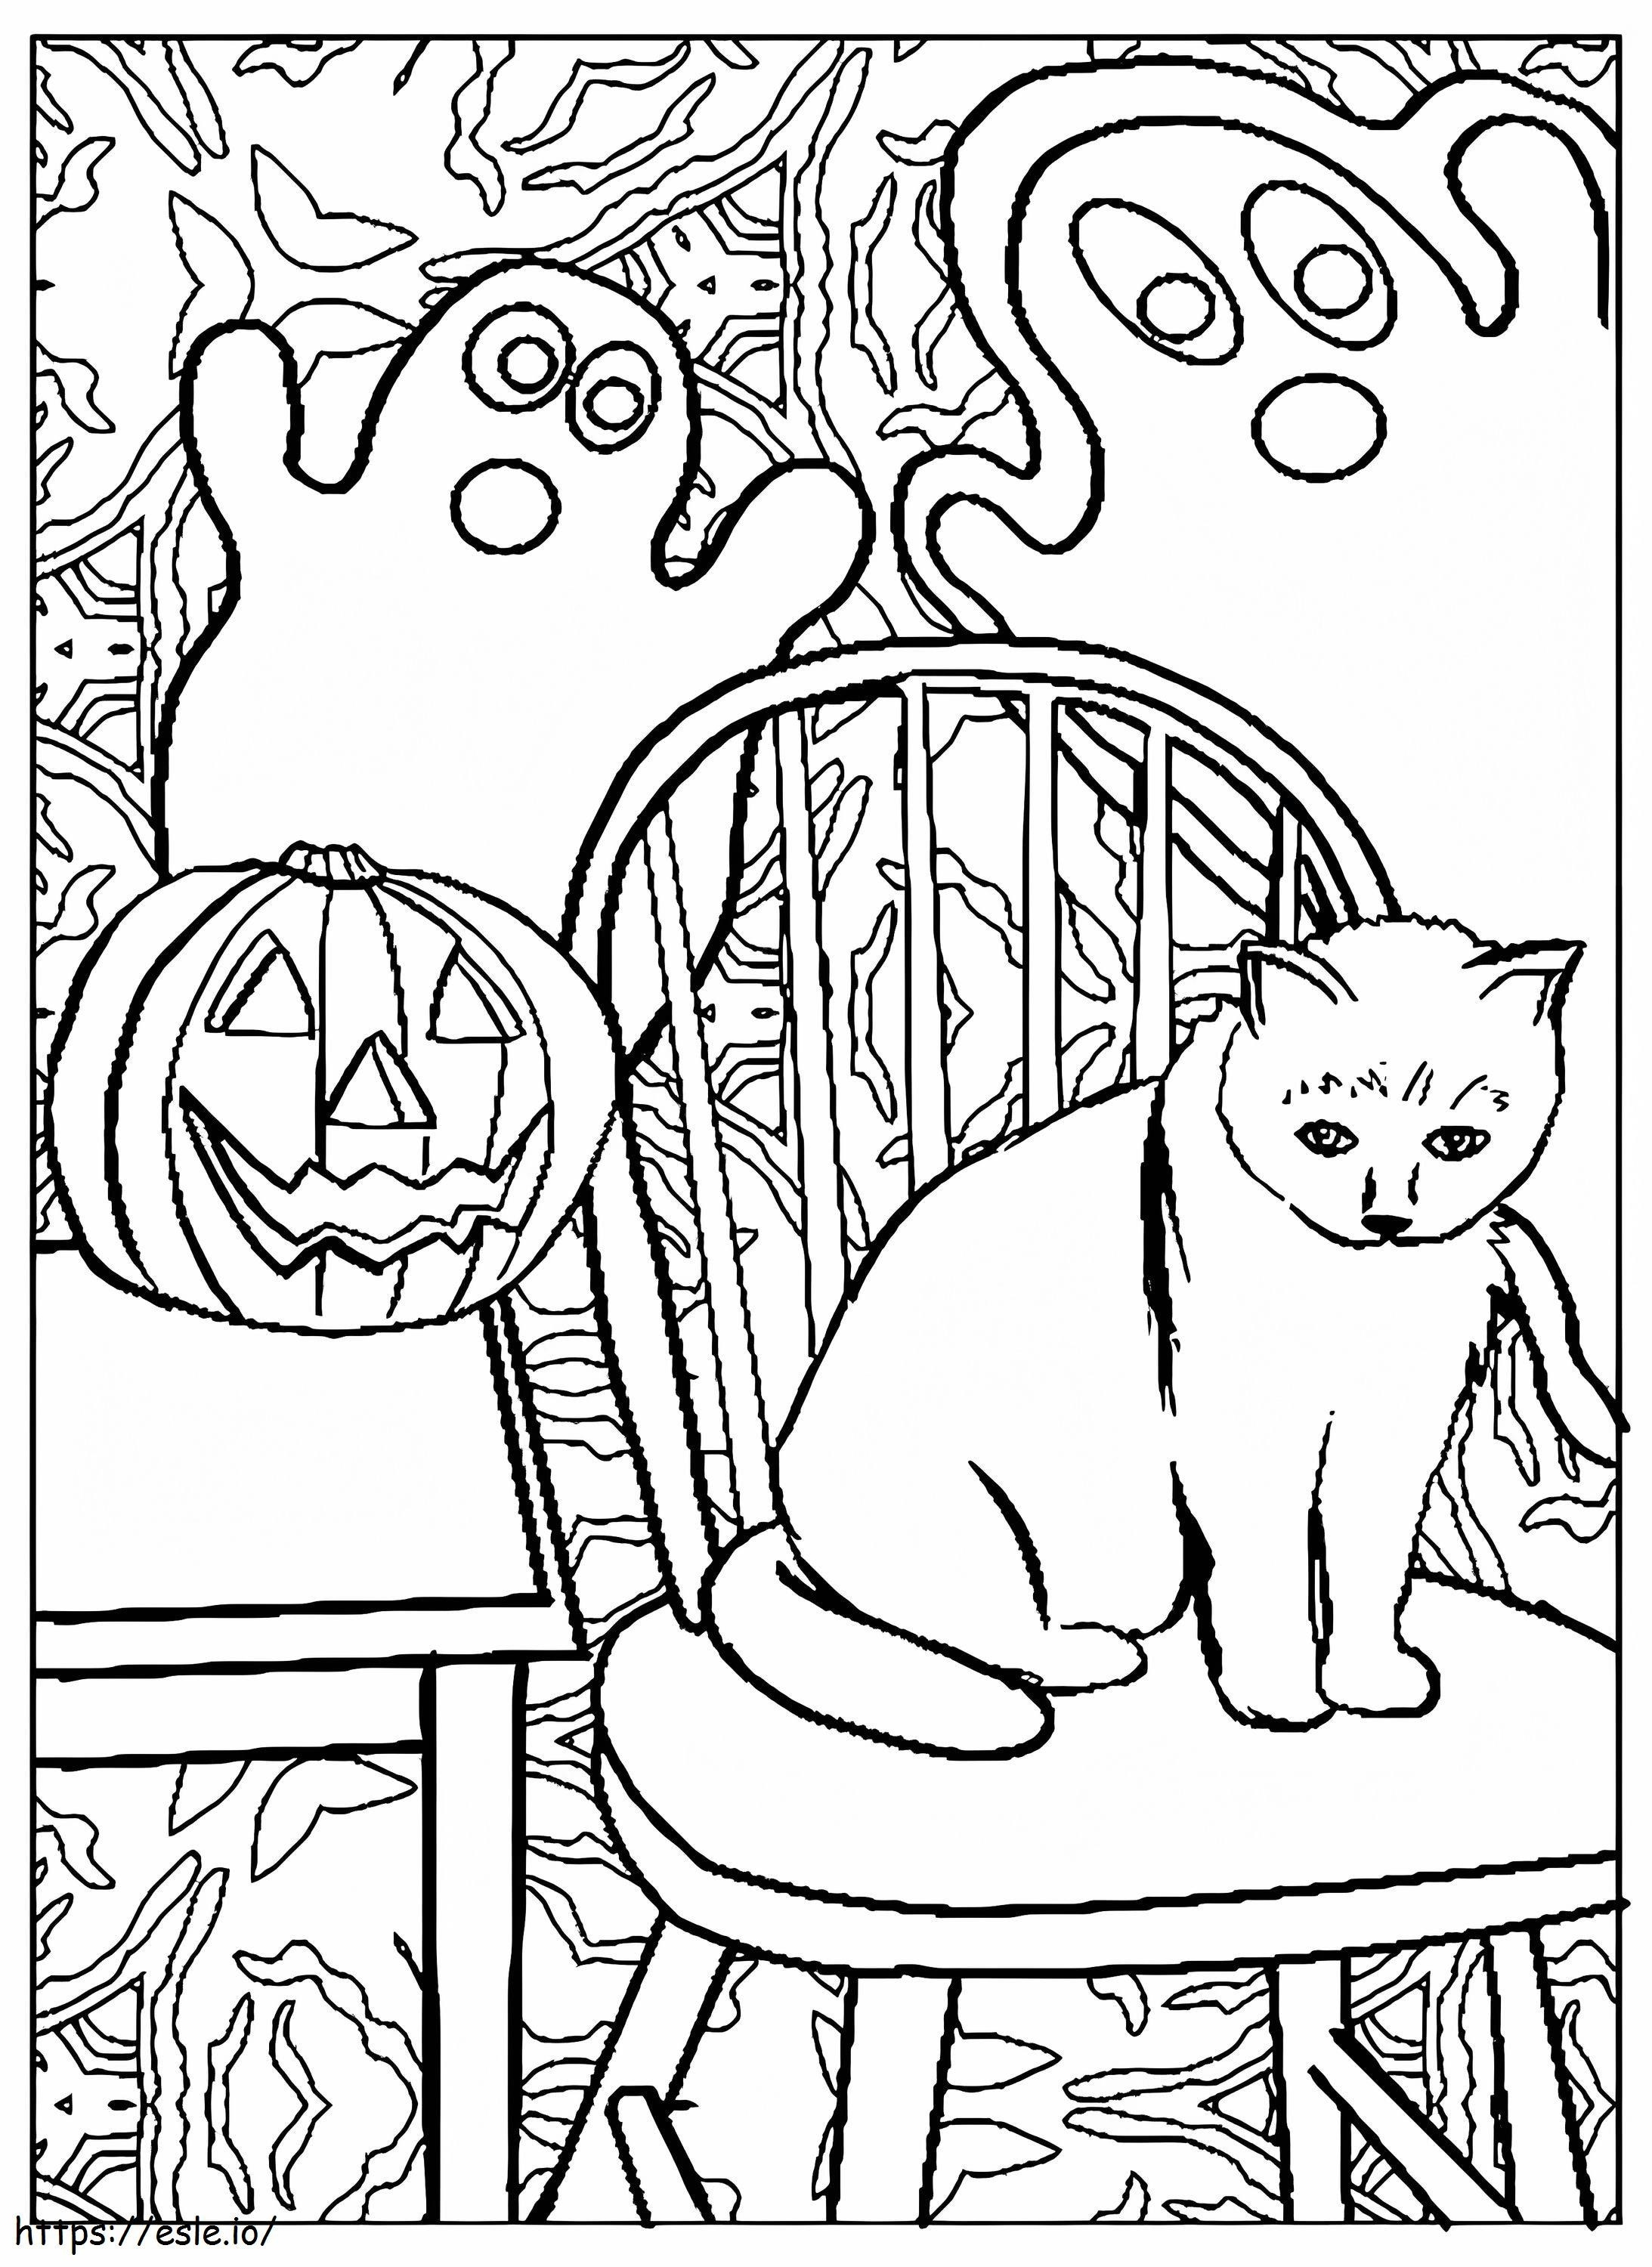 Coloriage Chatter un Halloween 746X1024 à imprimer dessin